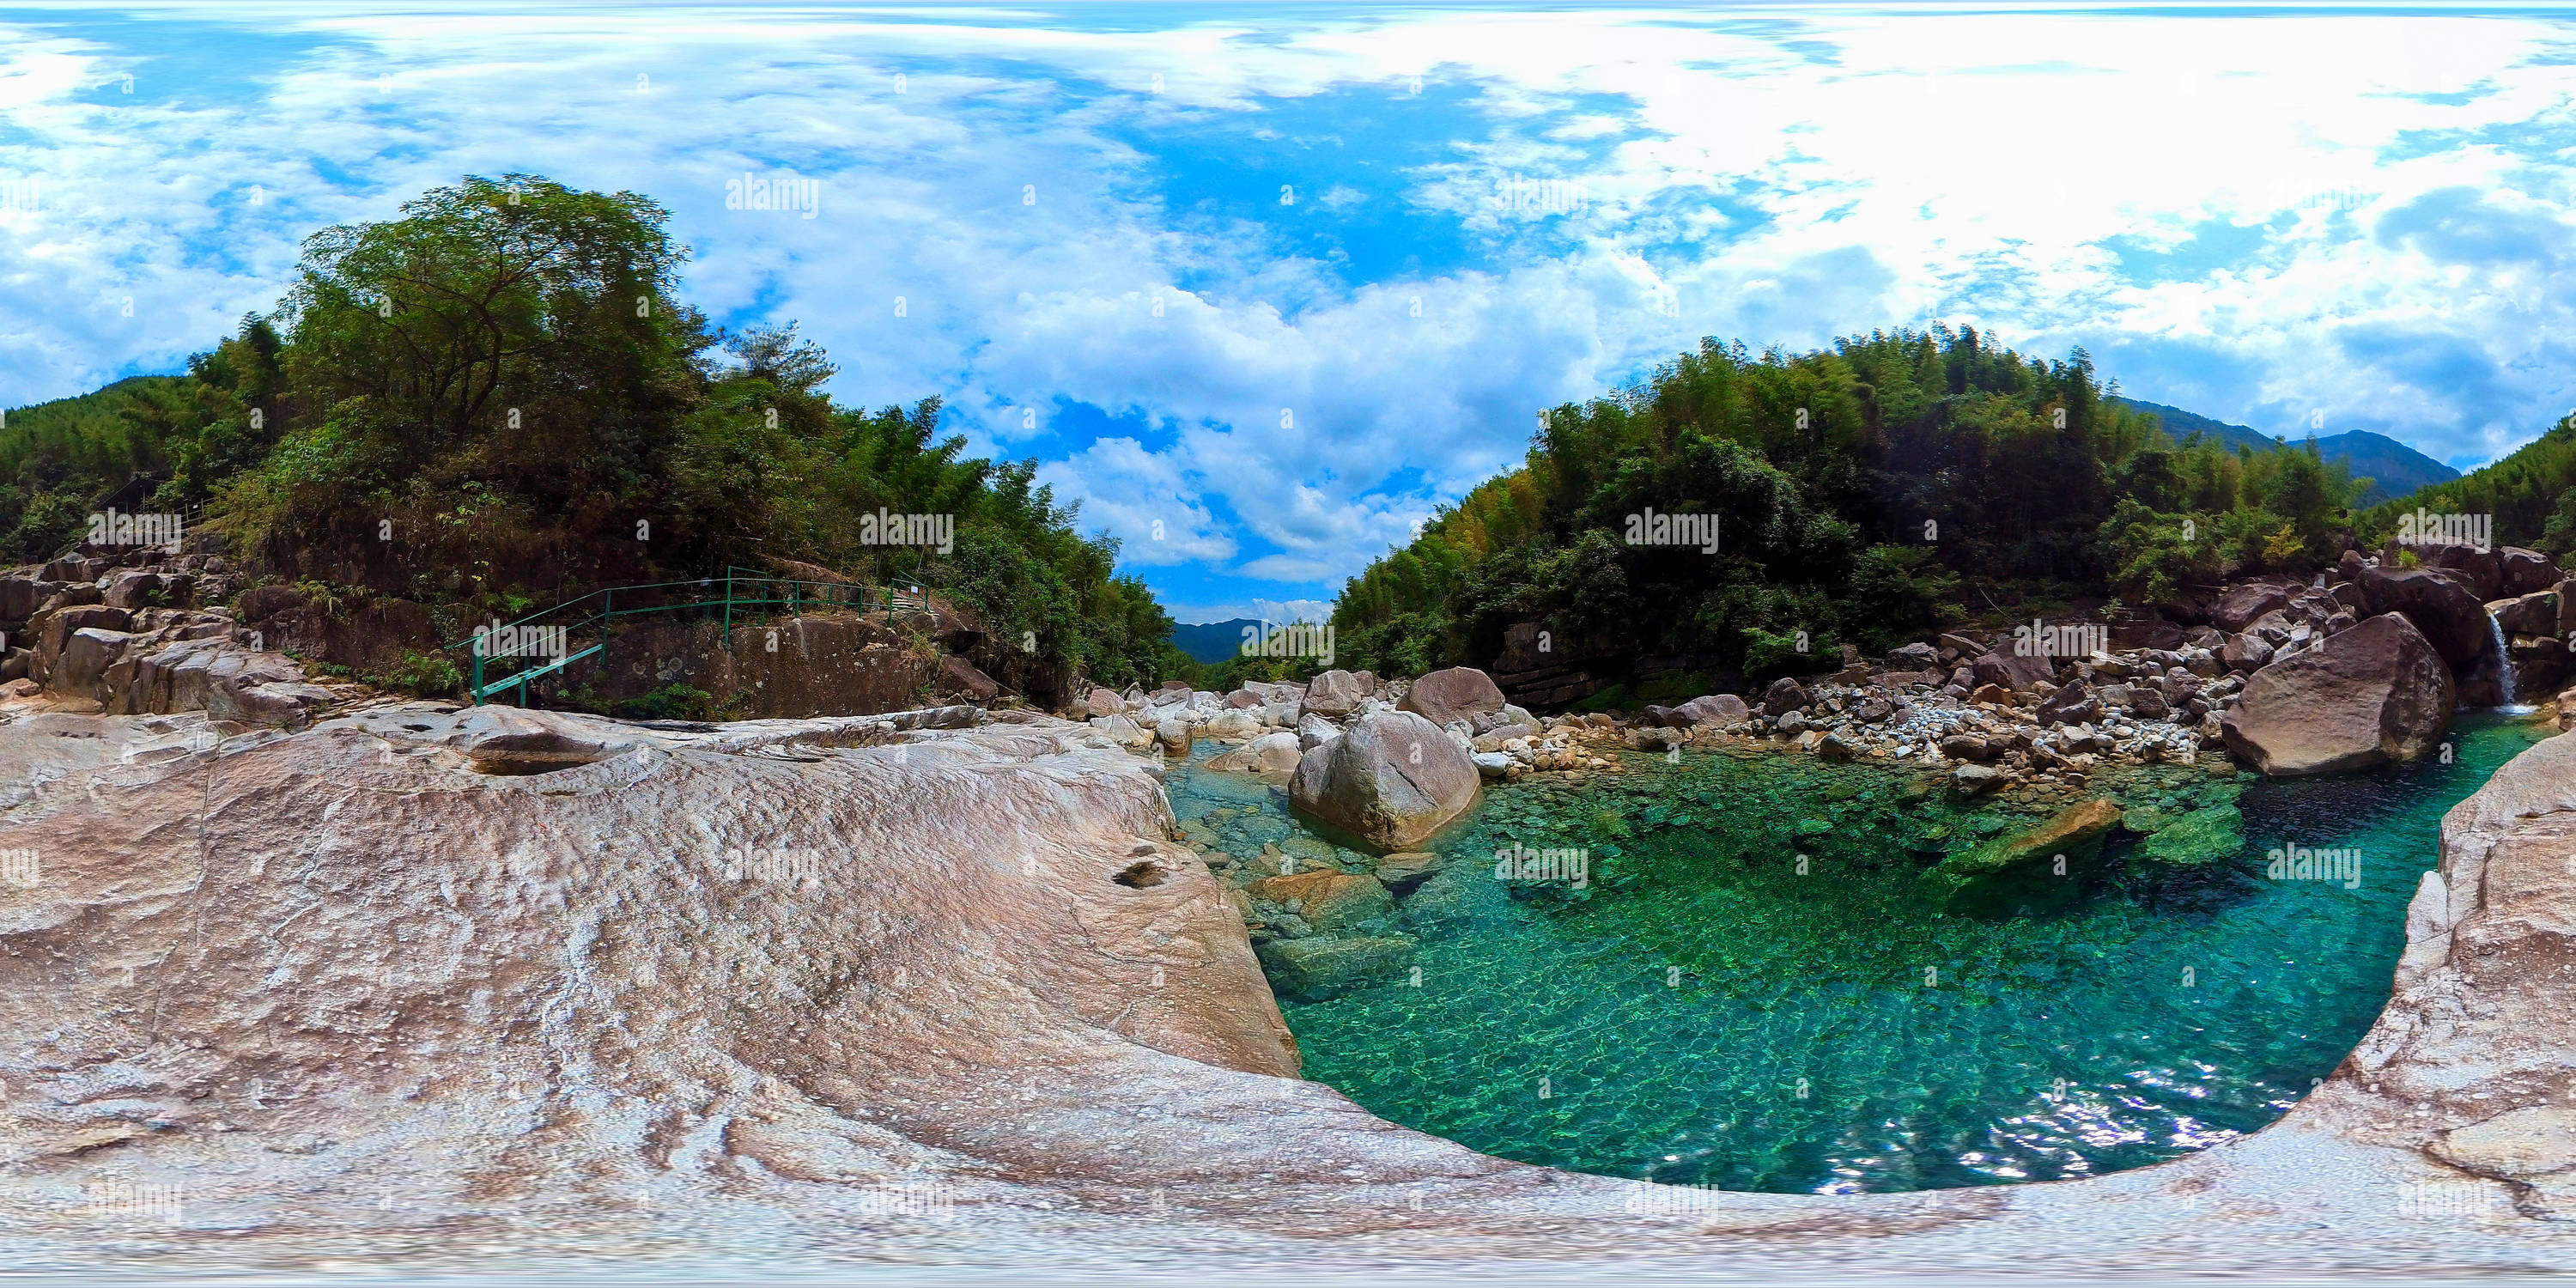 360 Grad Panorama Ansicht von Wilde Bäche und Wasserfälle 野外溪流与瀑布